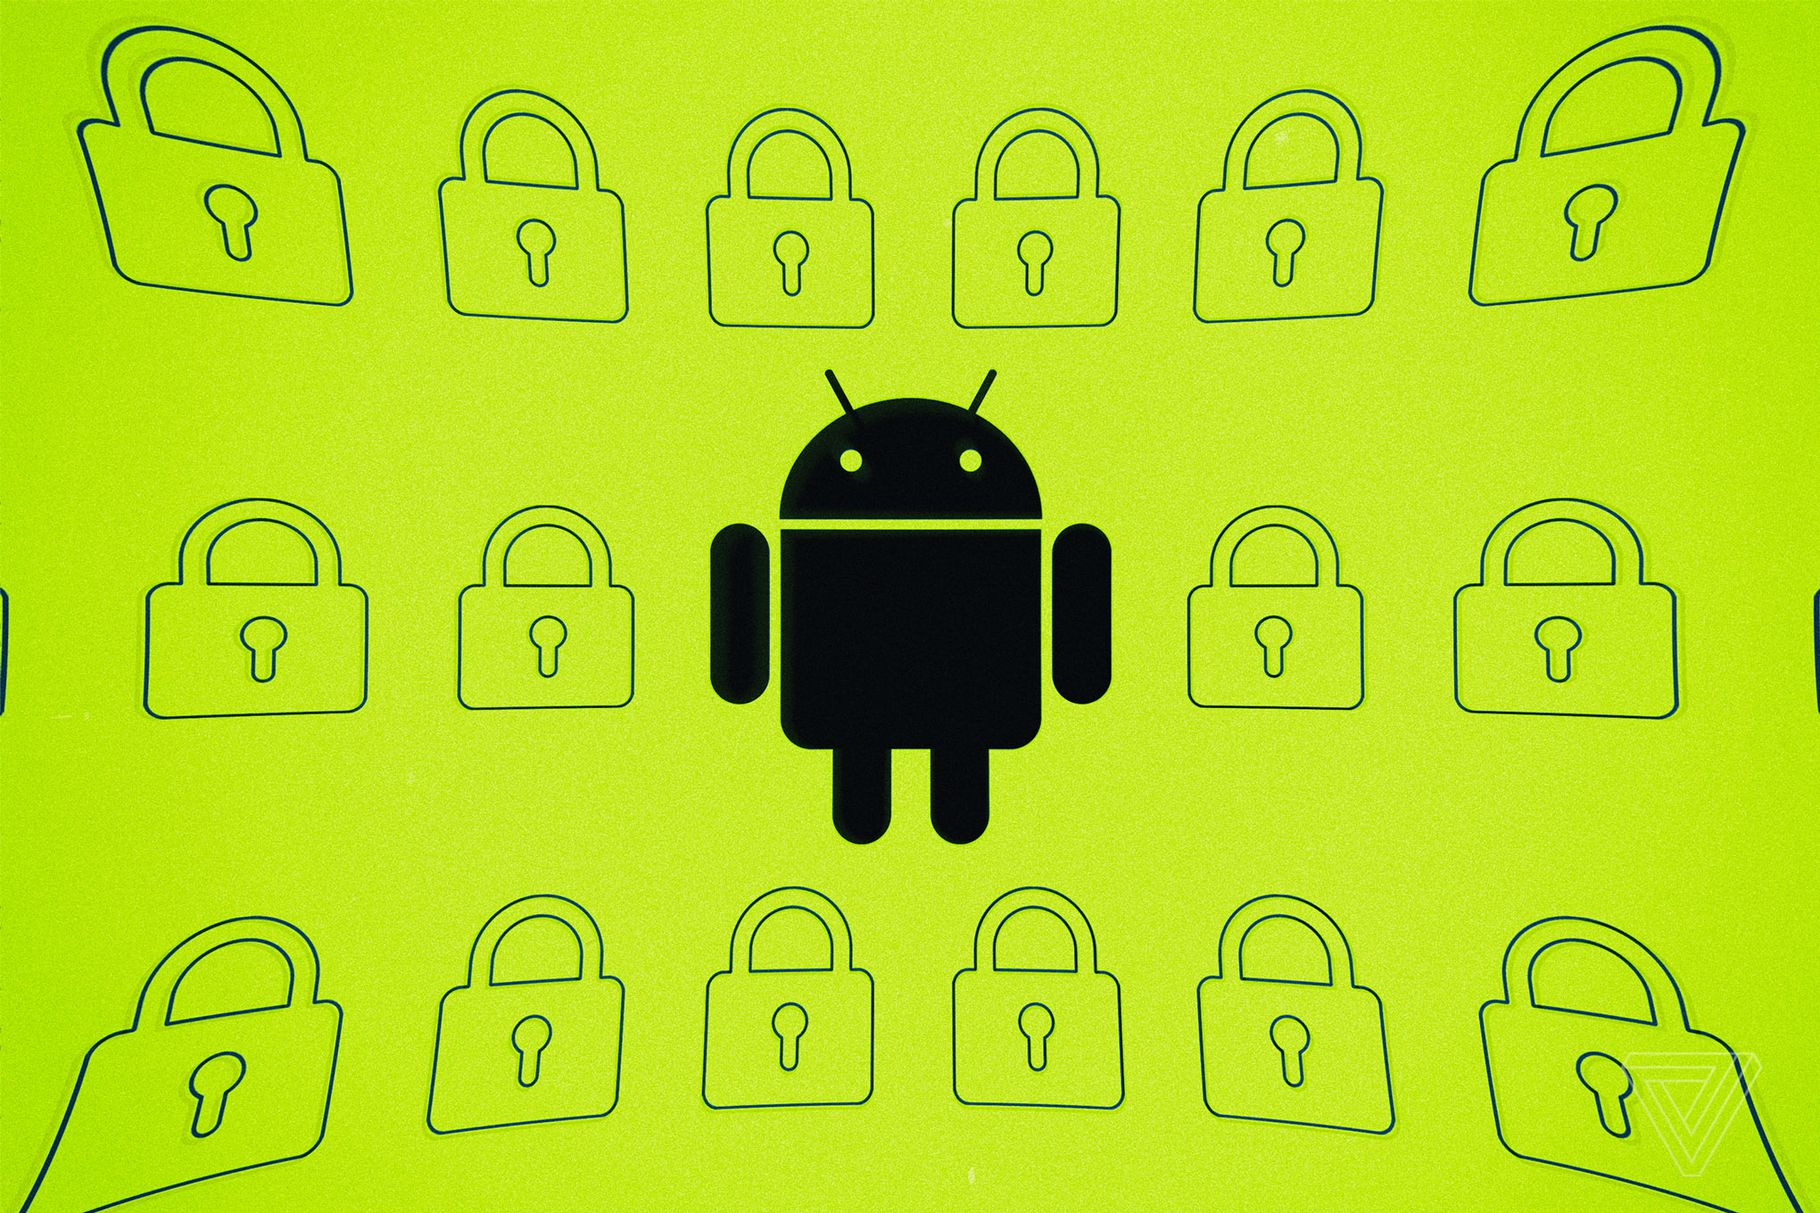 ไม่ปลอดภัยอย่างที่คิด พบแอป Android นับพัน แอบเก็บข้อมูลผู้ใช้งานโดยไม่ได้รับอนุญาต